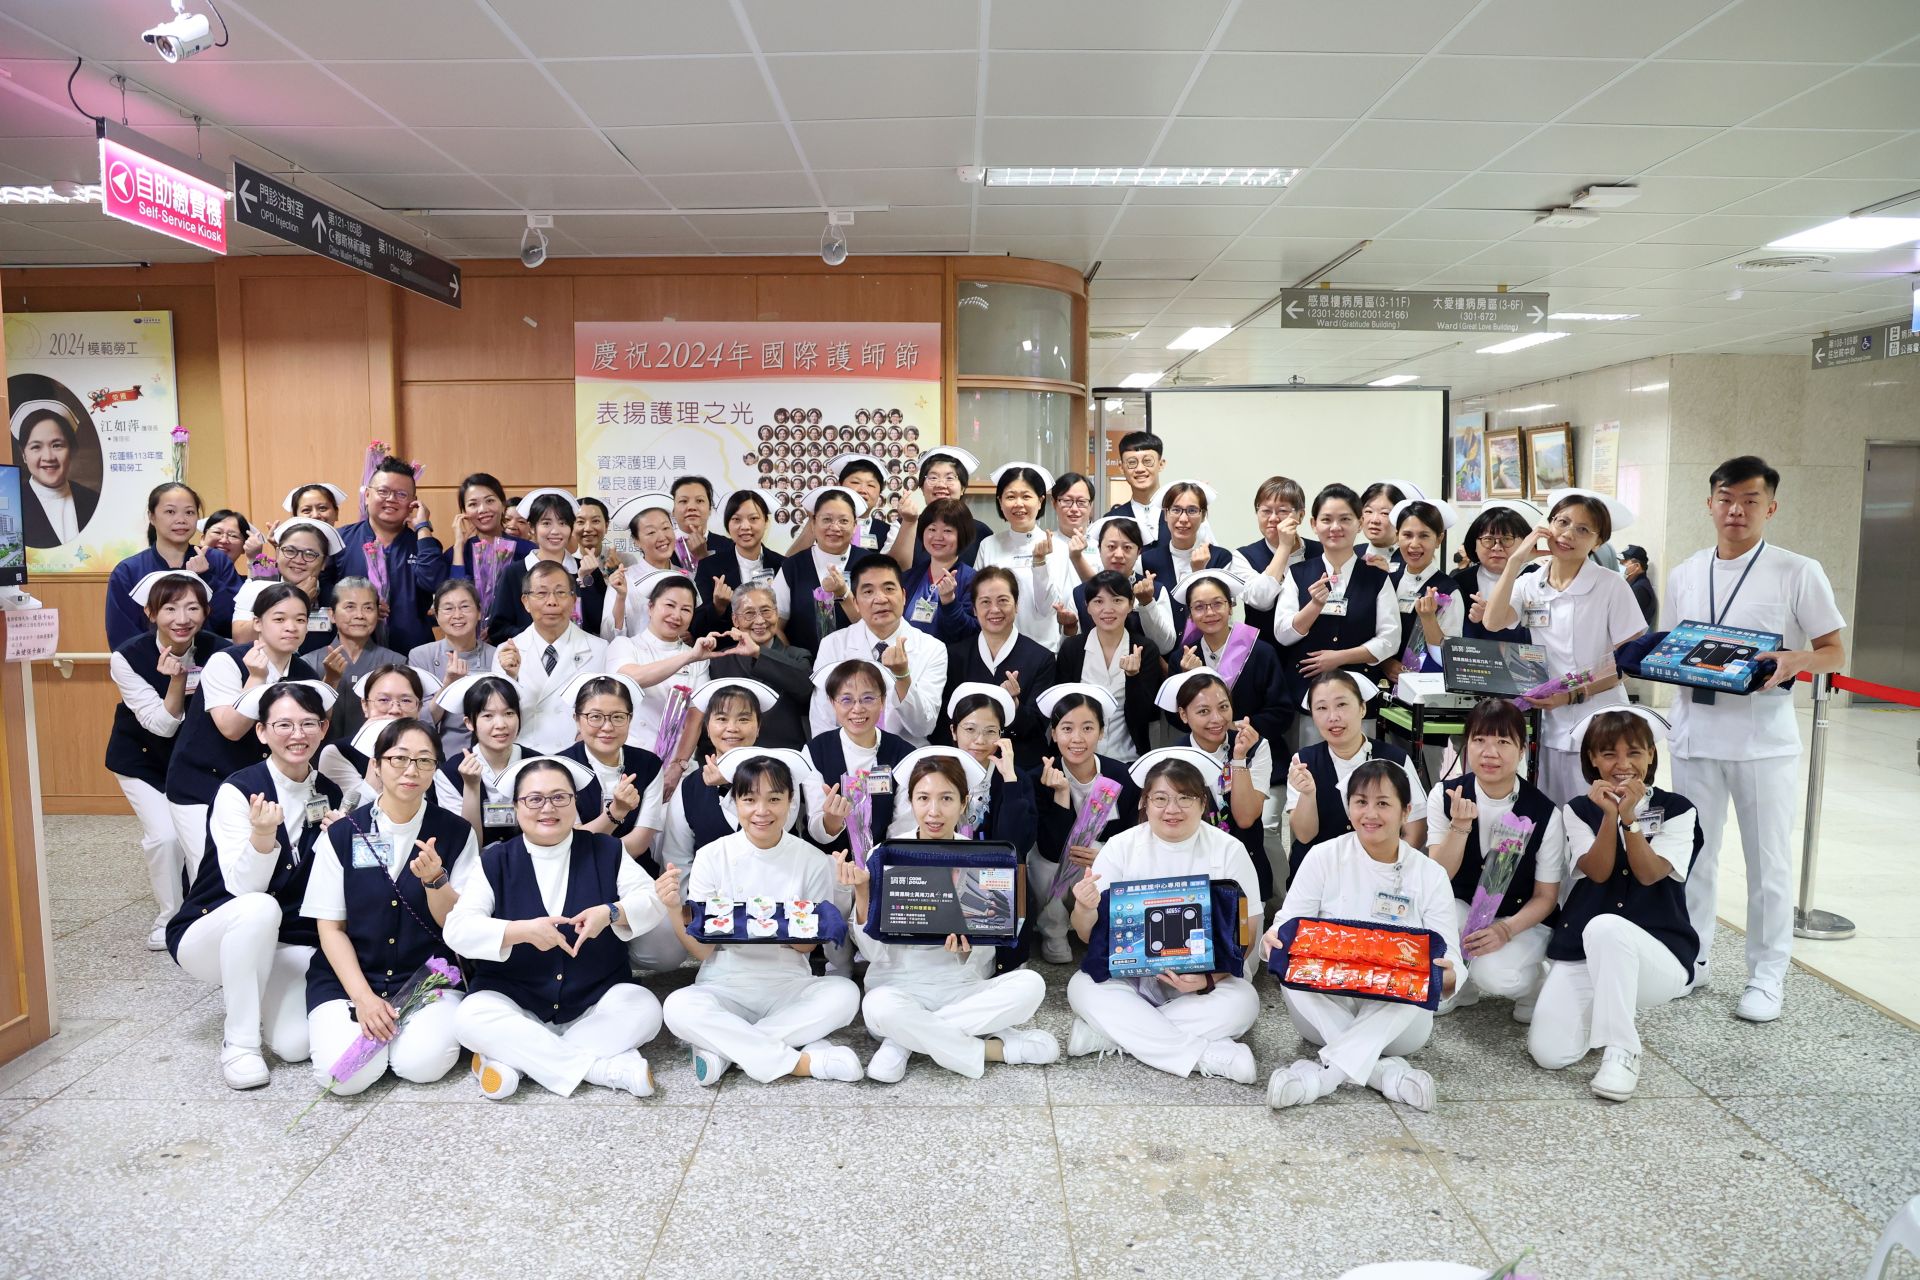 花蓮慈濟醫院於5月9日上午舉辦國際護師節慶祝暨表揚大會及「護理之光長廊」揭幕儀式。